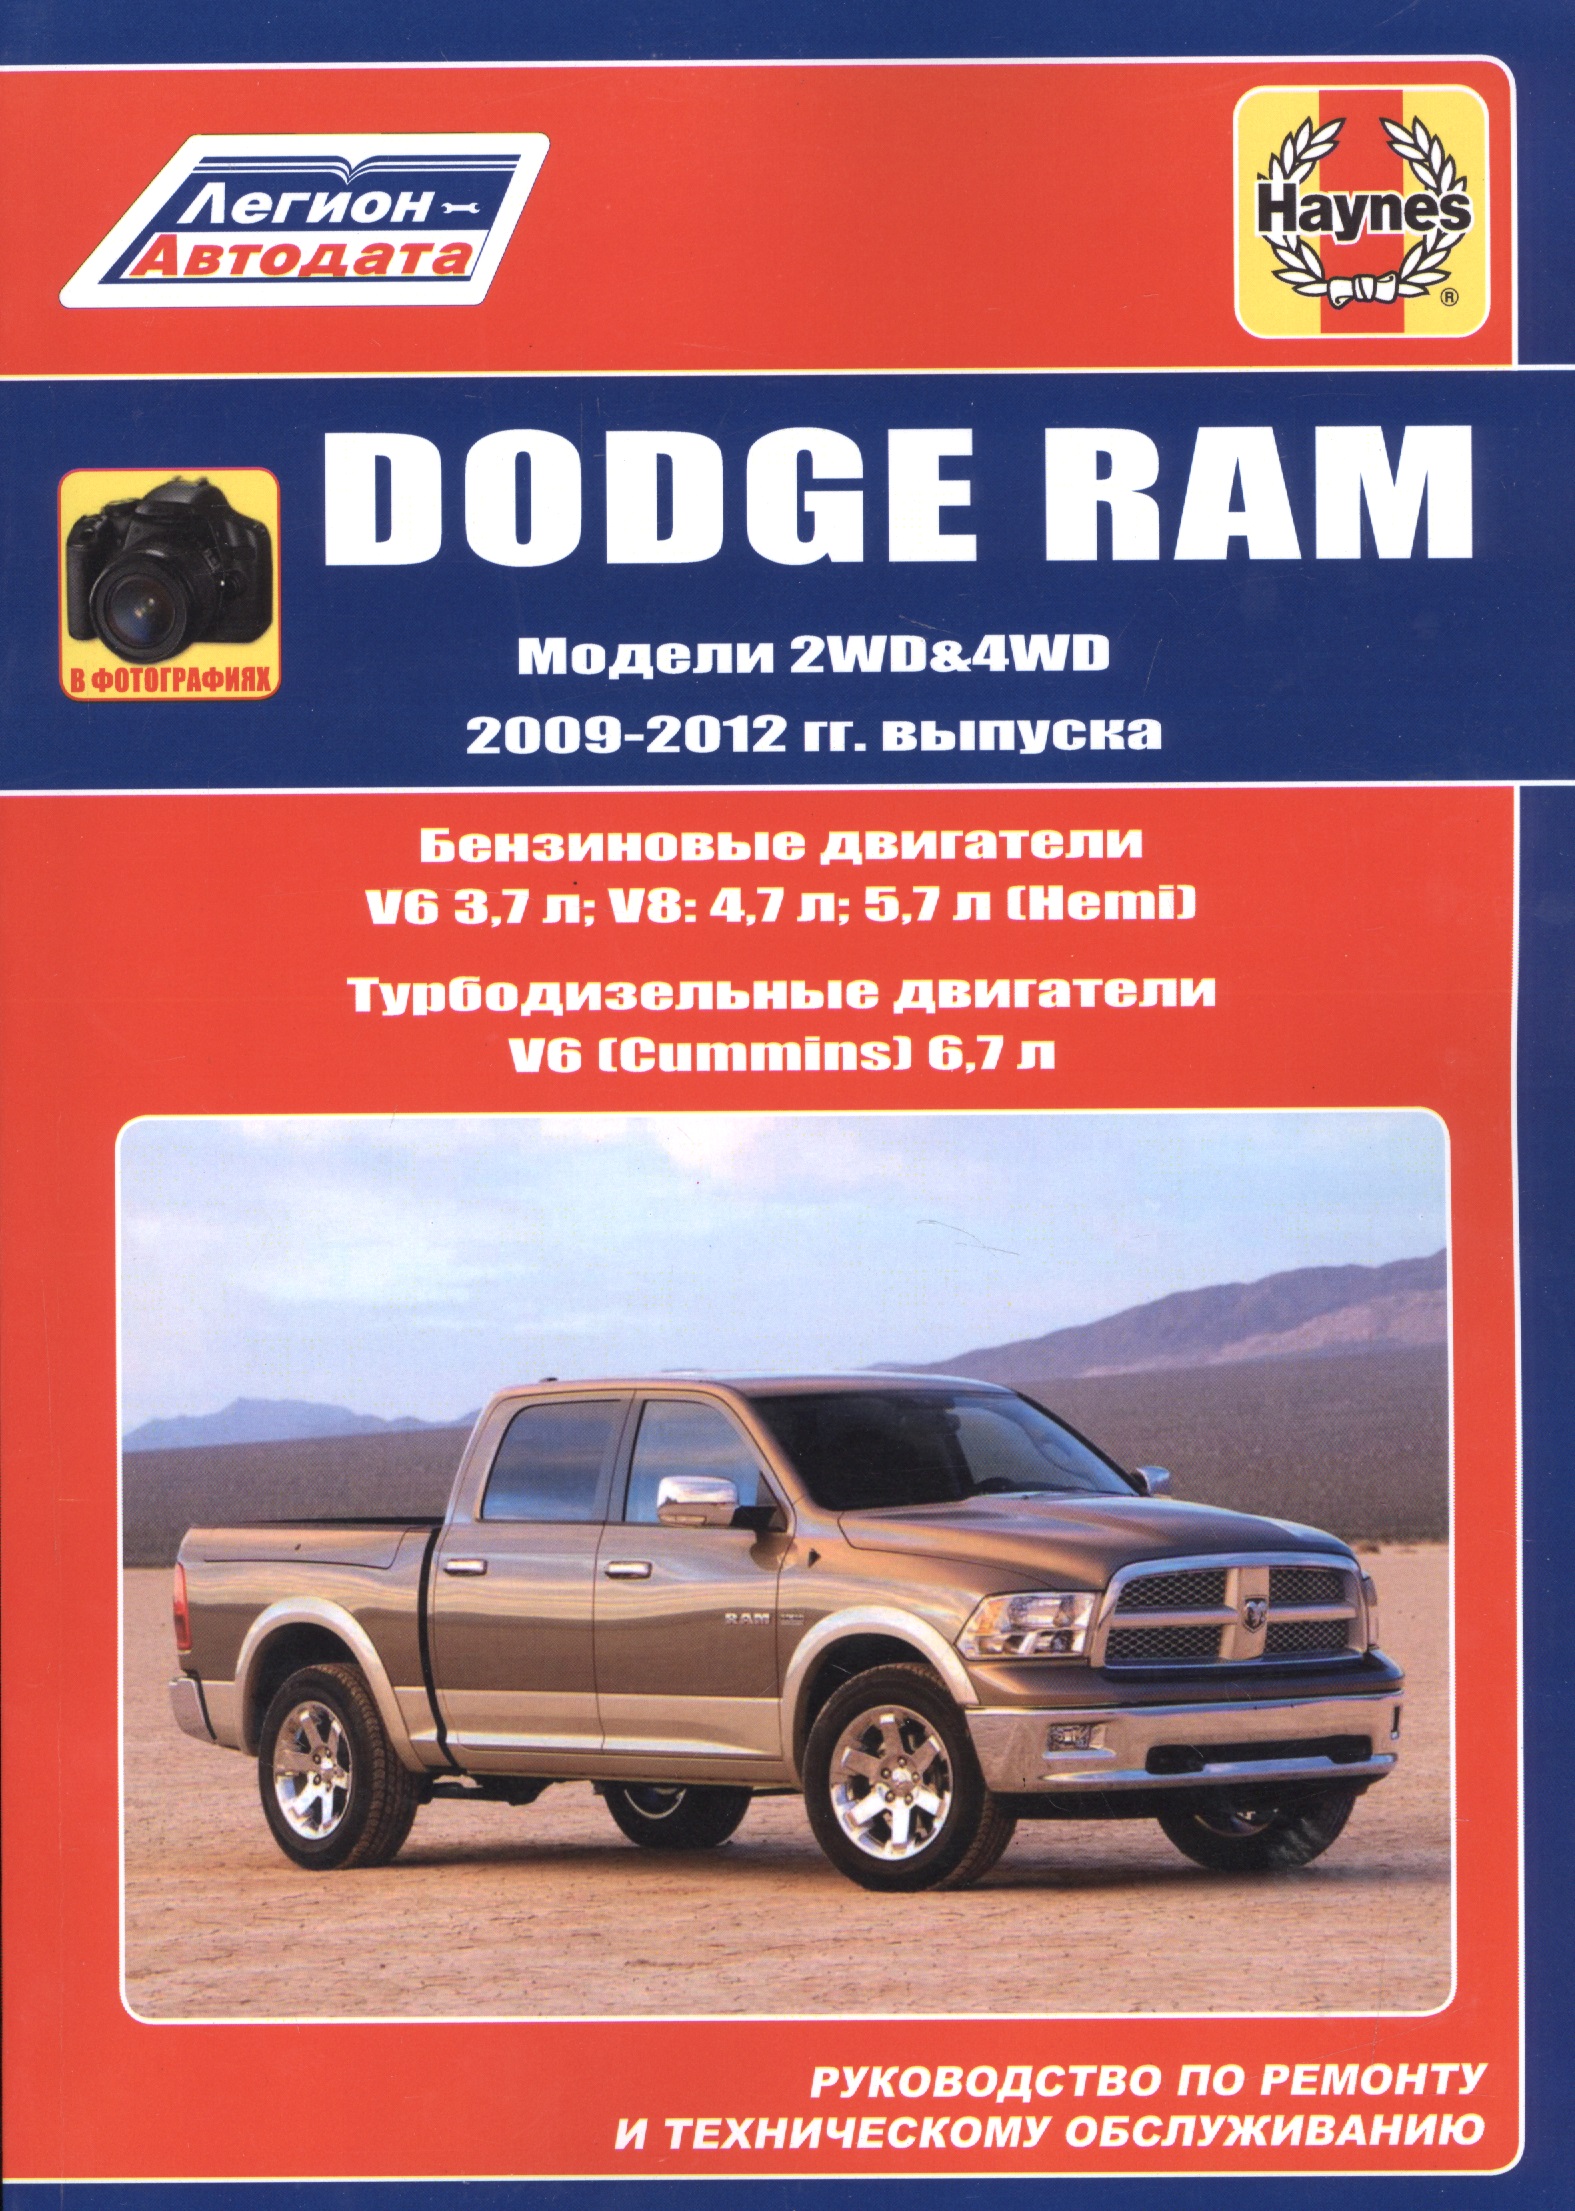 Dodge RAM. Модели 2WD&WD 2009 - 2012 гг. выпуска с бензиновыми V6 3,7л. V8: 4,7л .5,7л (Hemi) и турбодизельным V6 (Cummins) 6,7л двигателями. Руководство по ремонту и техническому обслуживанию датчик положения дроссельной заслонки tps для dodge jeep plymouth l4 l6 v6 v8 1991 1997 oe 4637072 4778463 5234903 4761871 4761871ab ac